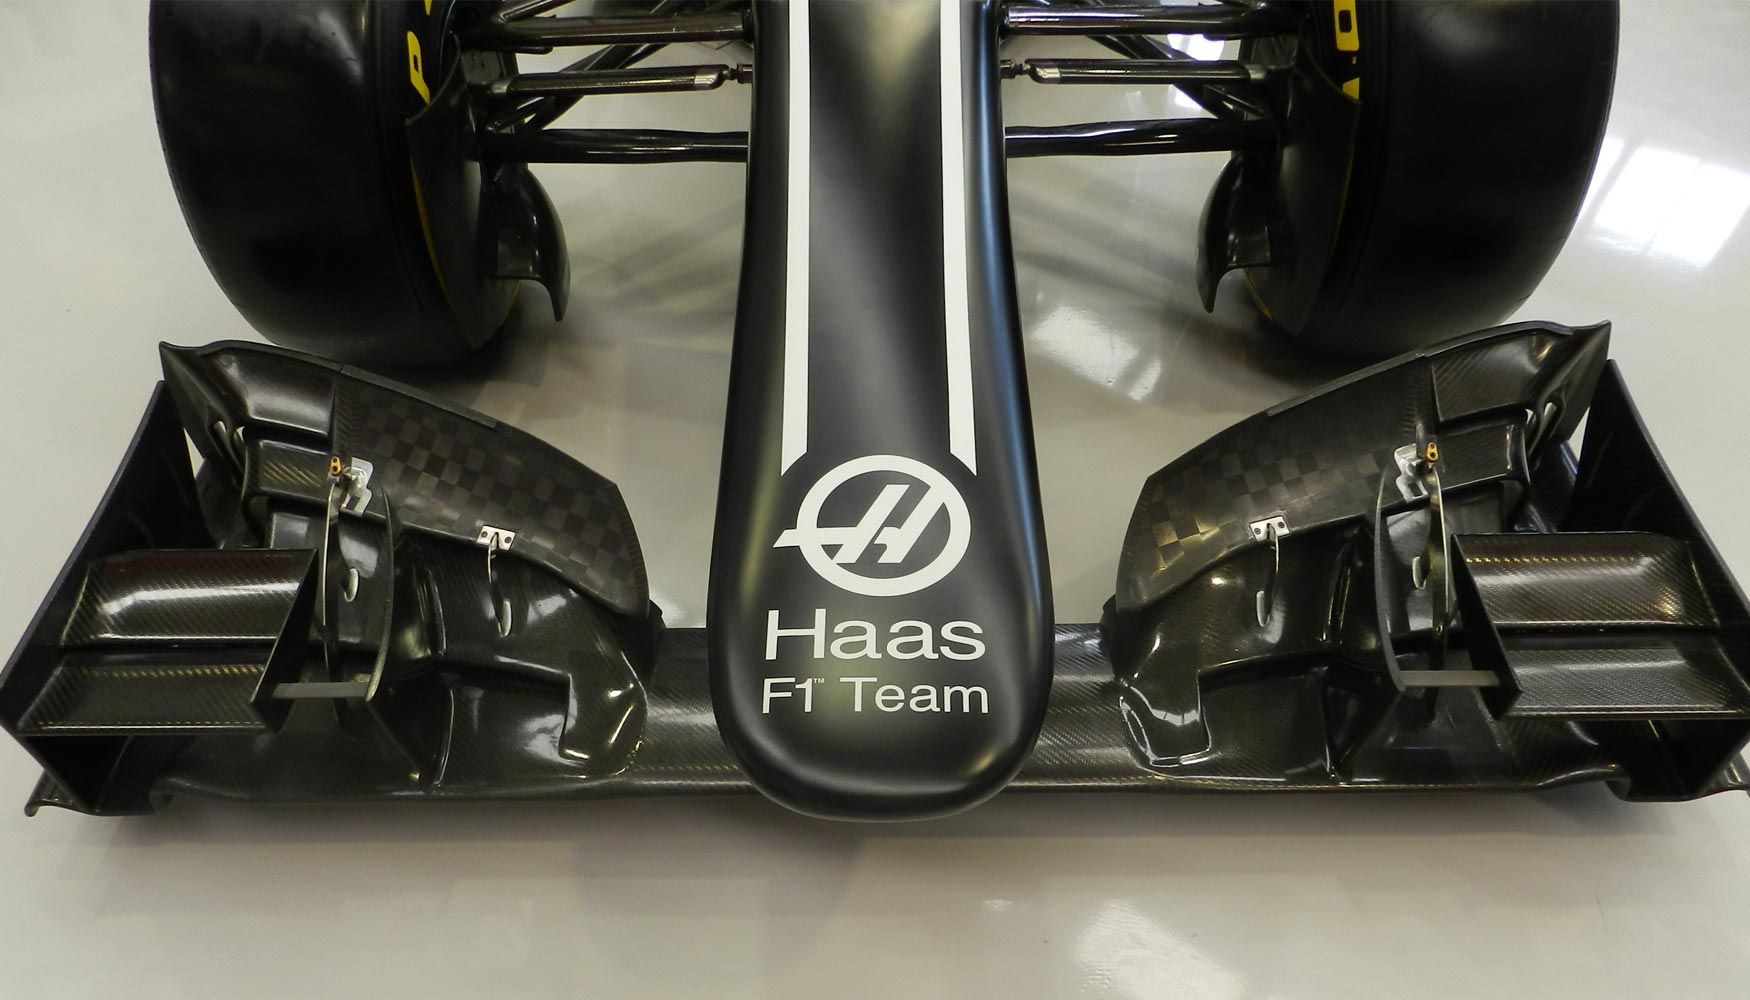 Detalle del alern delantero del Haas F1